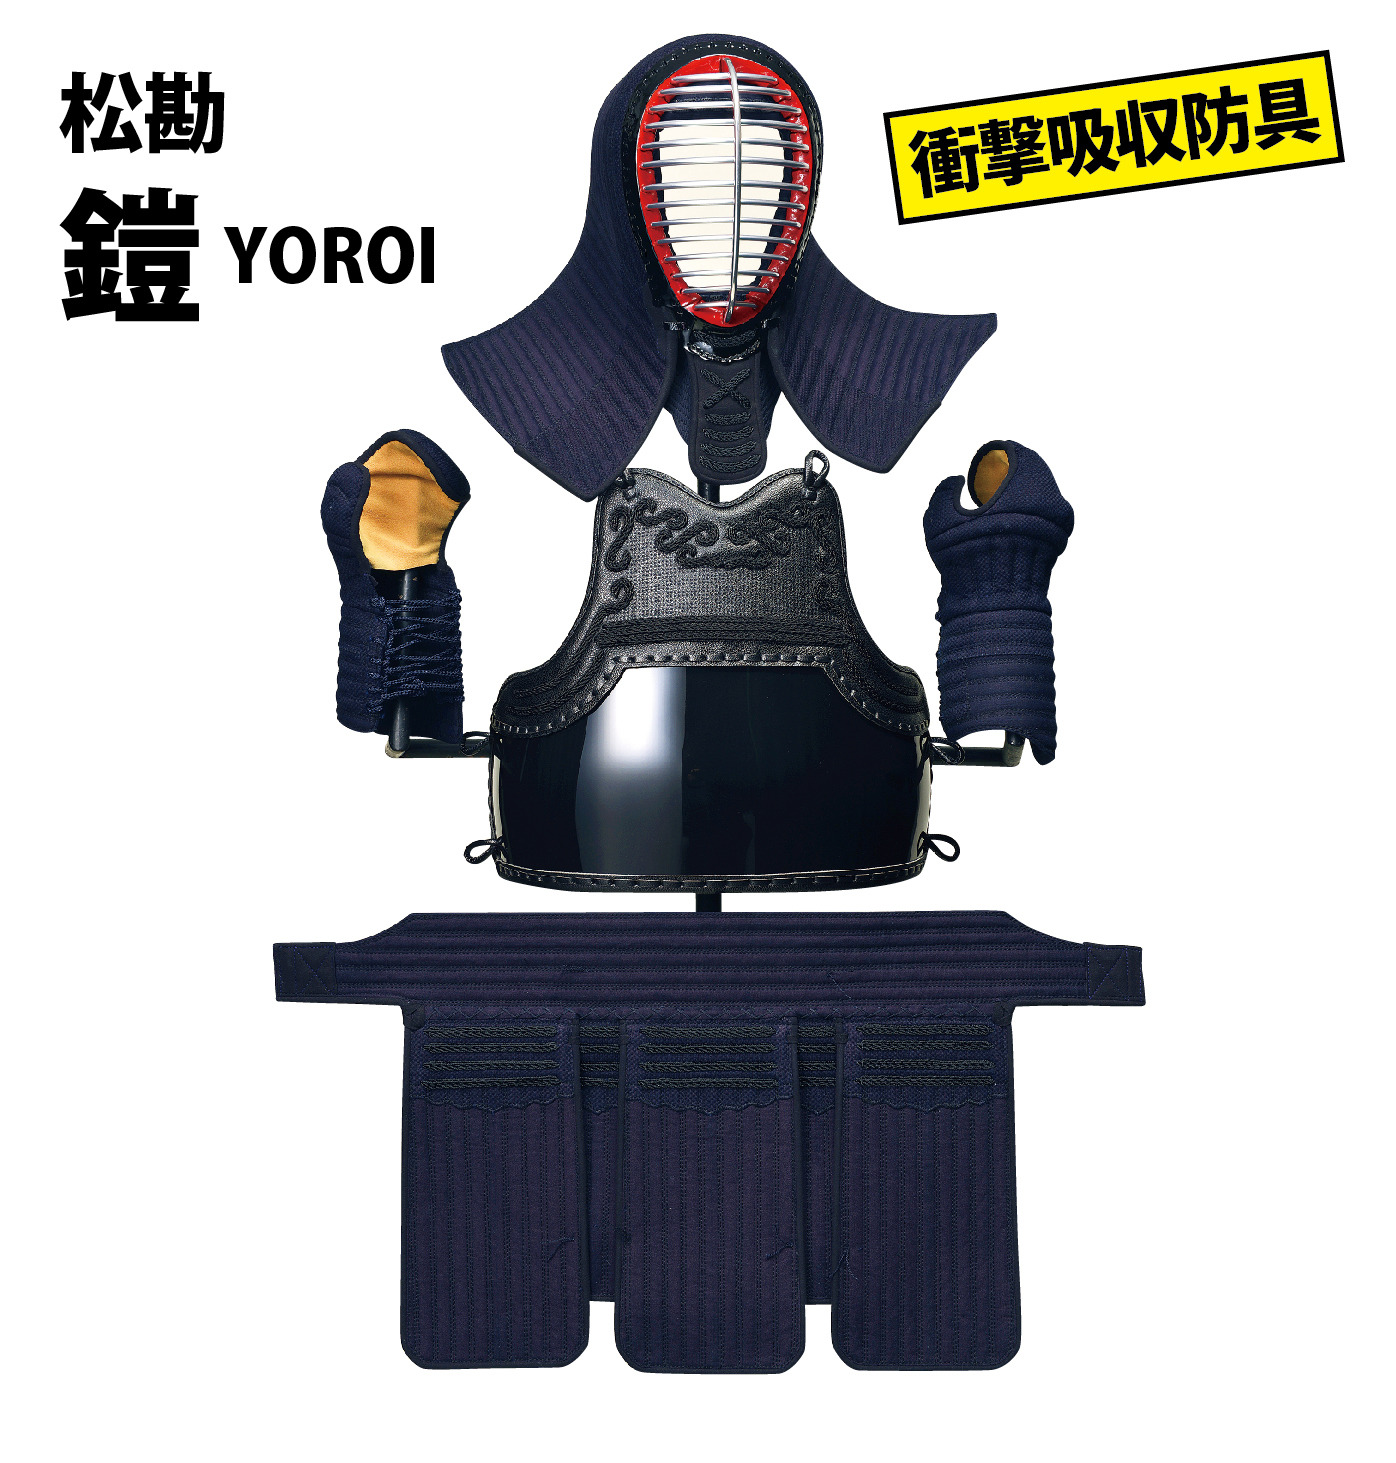 yoroi-set1